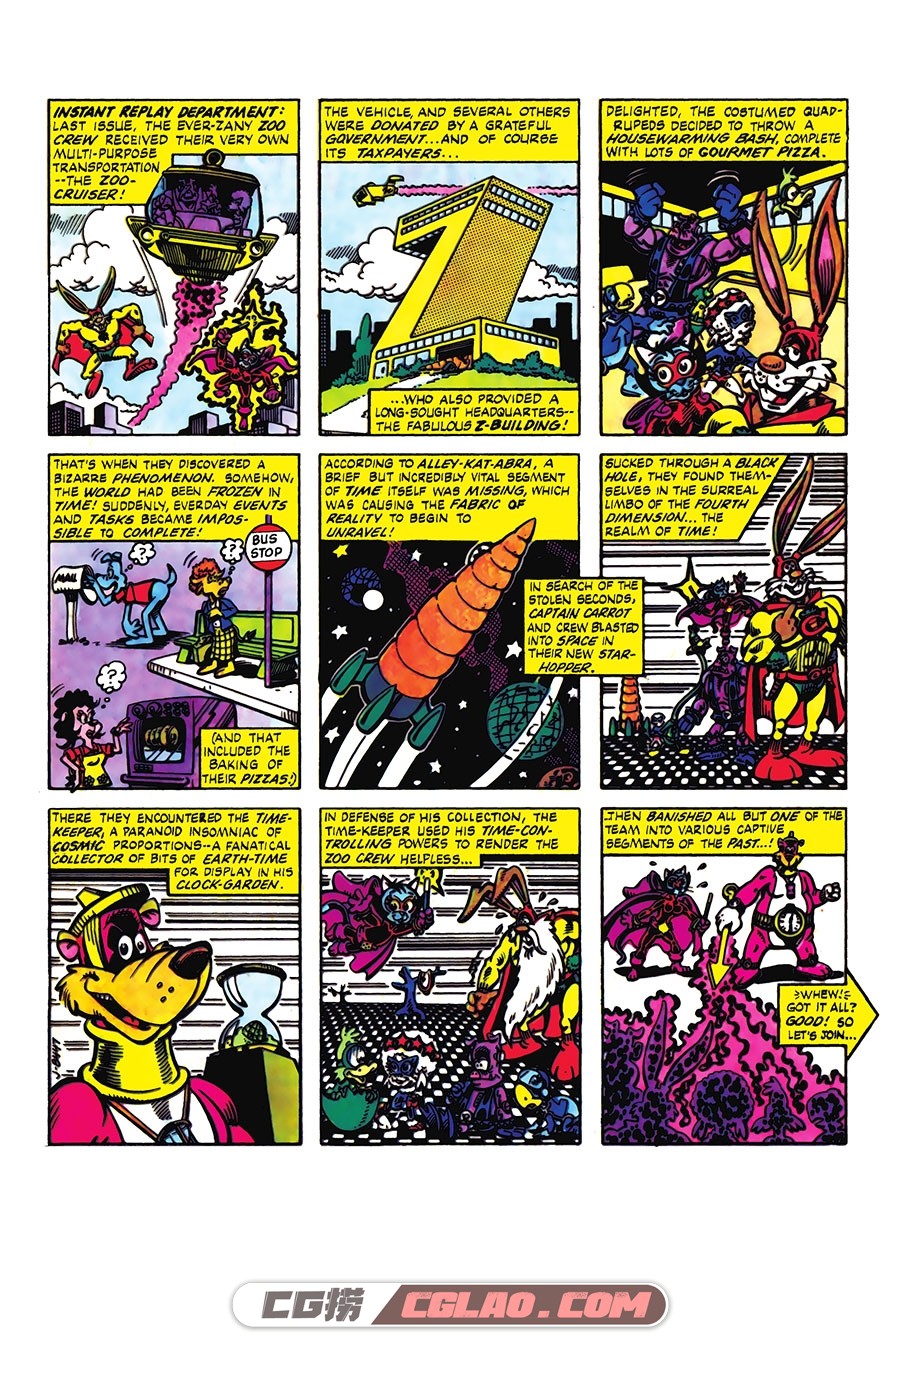 Captain Carrot and His Amazing Zoo Crew 009 (1982) Digital 漫画 百度网盘,Captain-Carrot-and-His-Amazing-Zoo-Crew-009-001.jpg